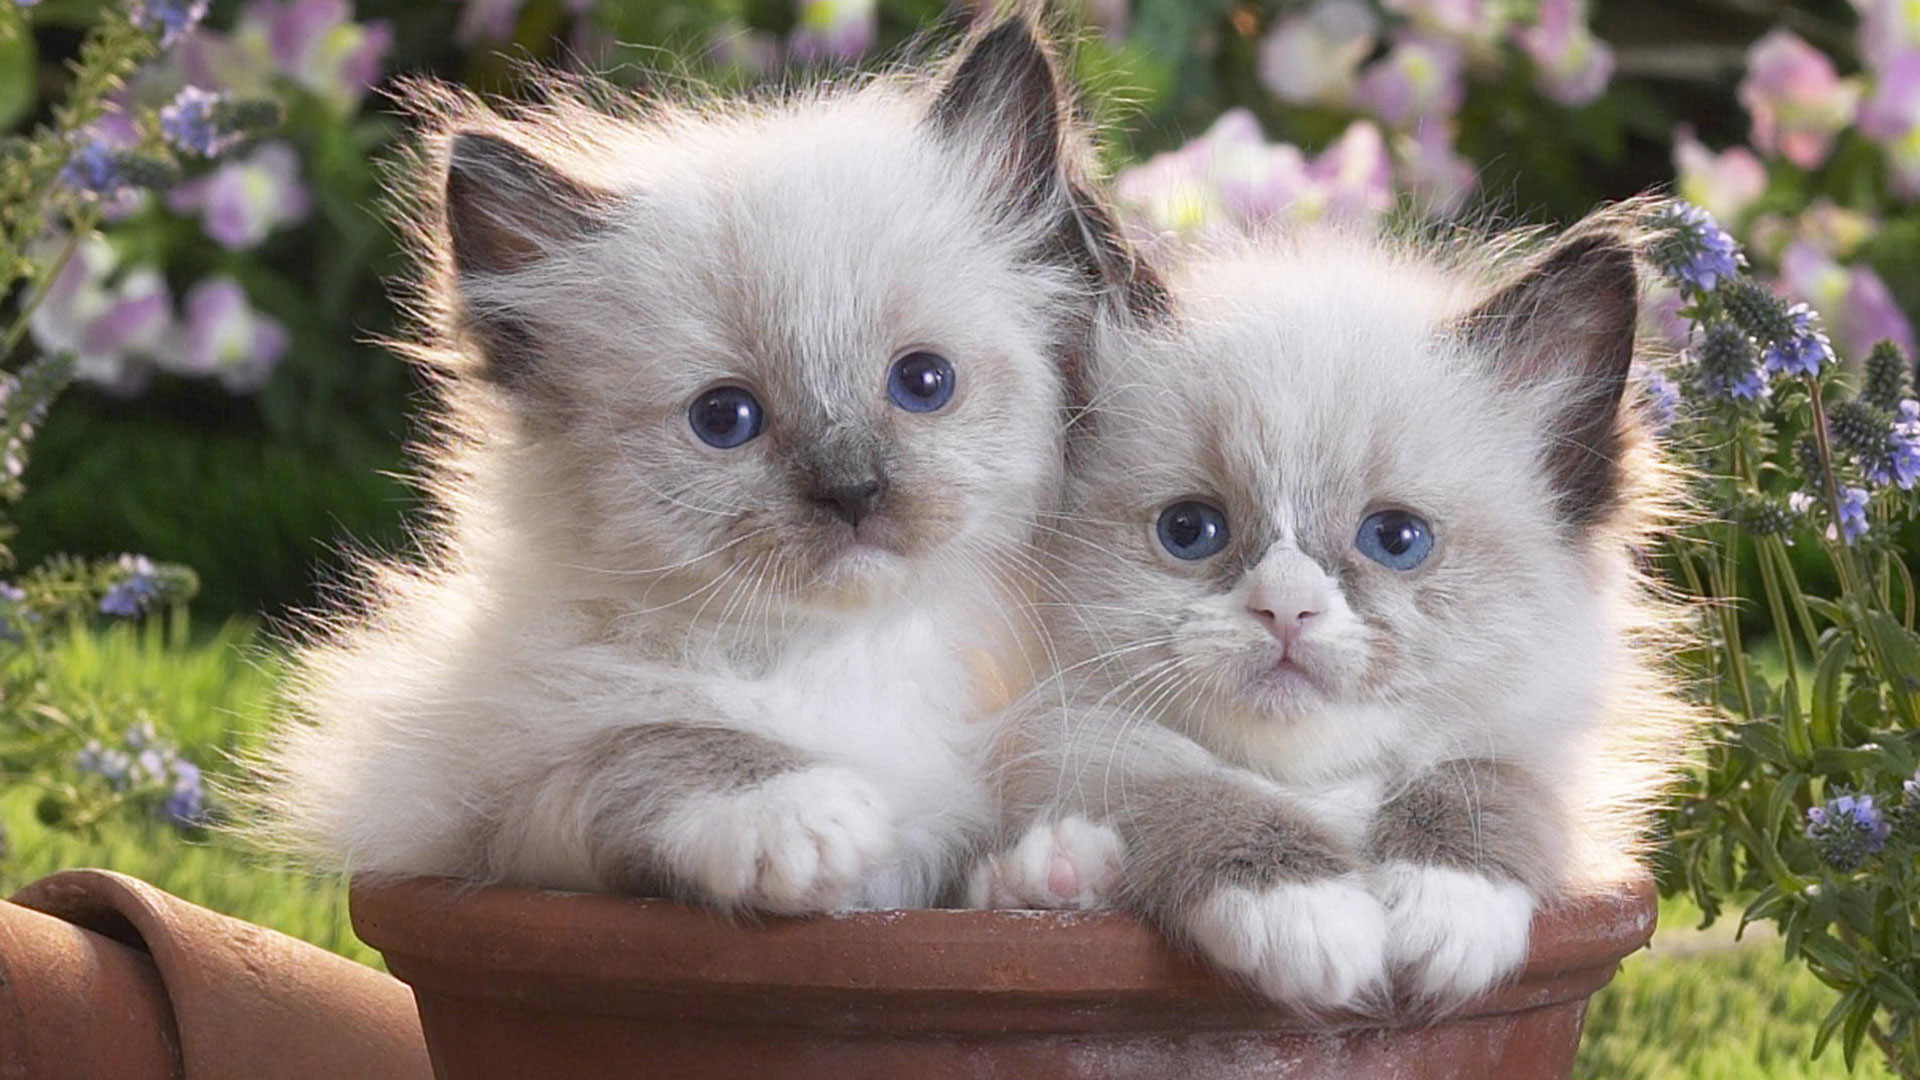 1920x1080 hd pics photos cute kitten pair in pot garden flowers hd quality desktop background  wallpaper